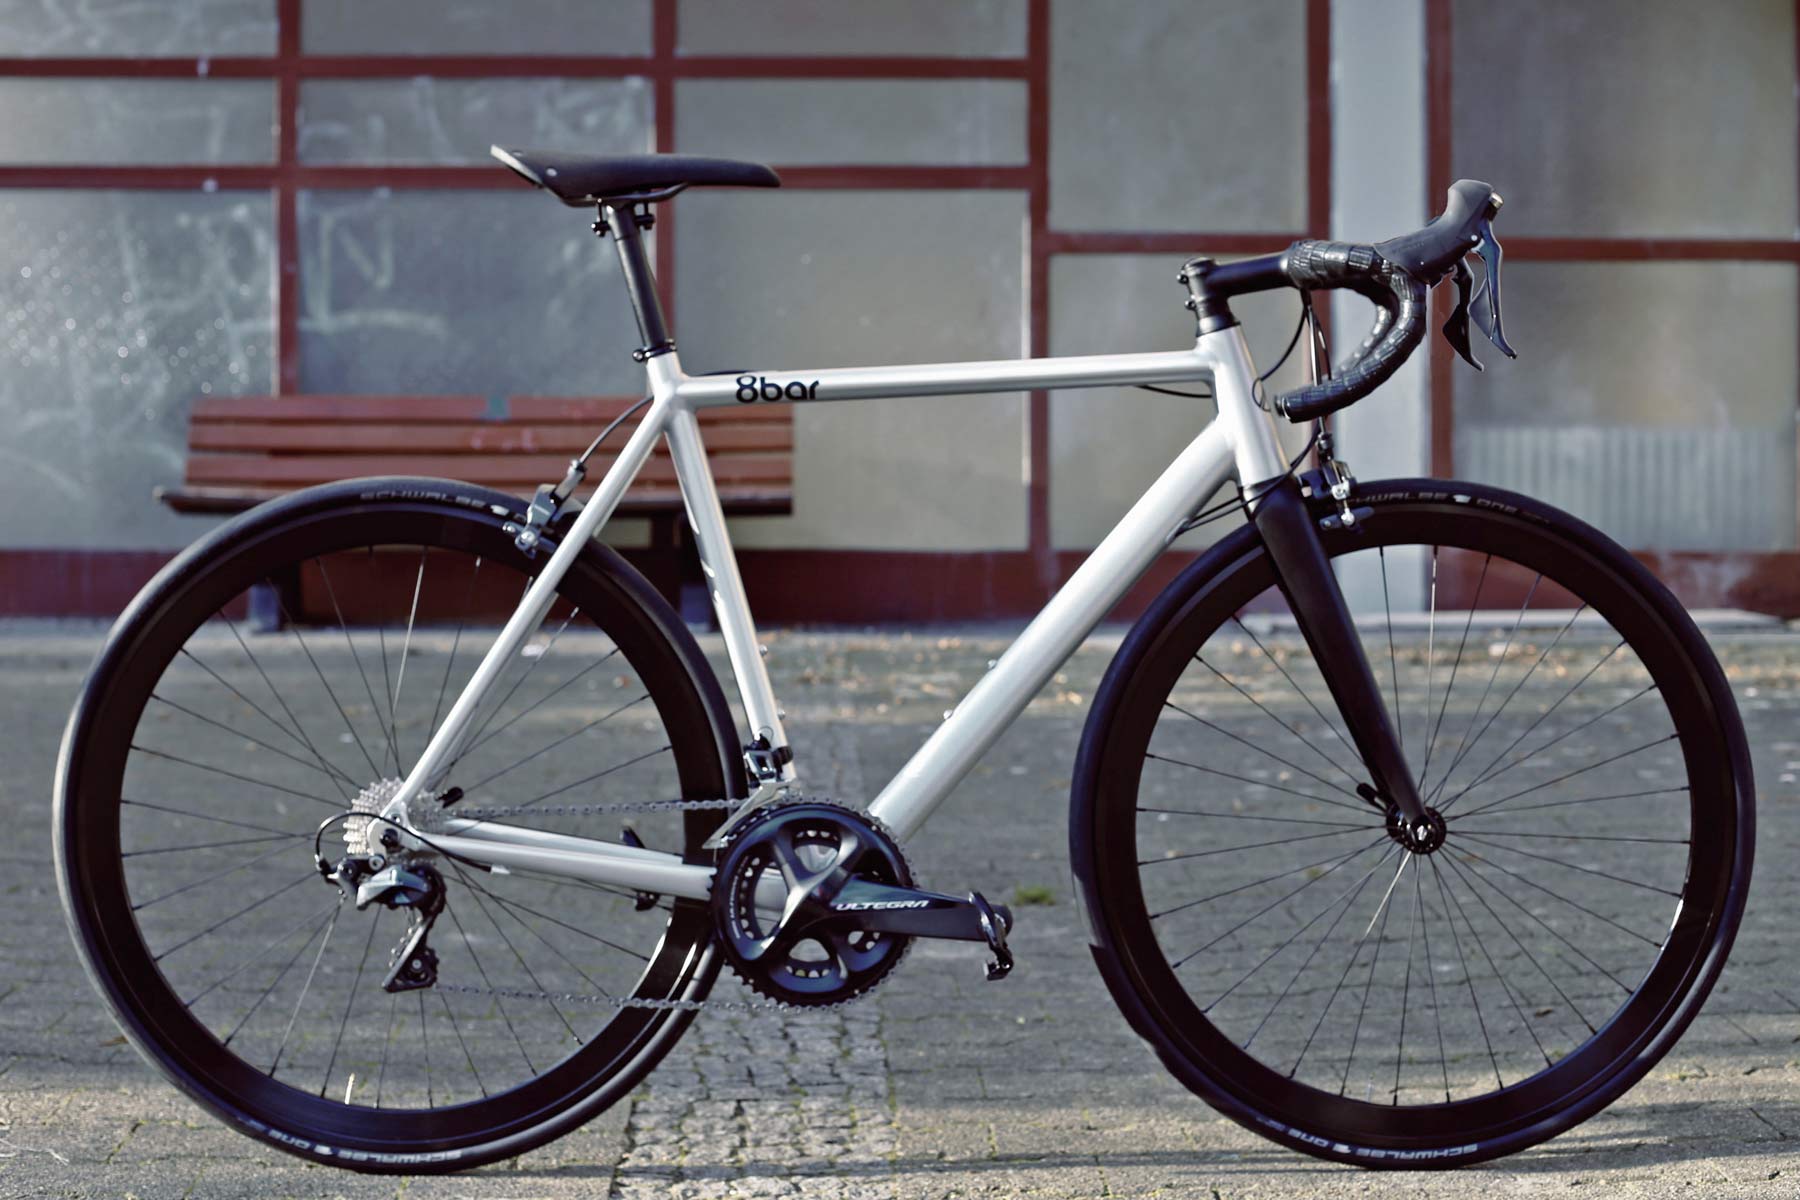 8bar updates alloy KRONPRINZ Road bike & FHAIN fixie, renames NEUKLN